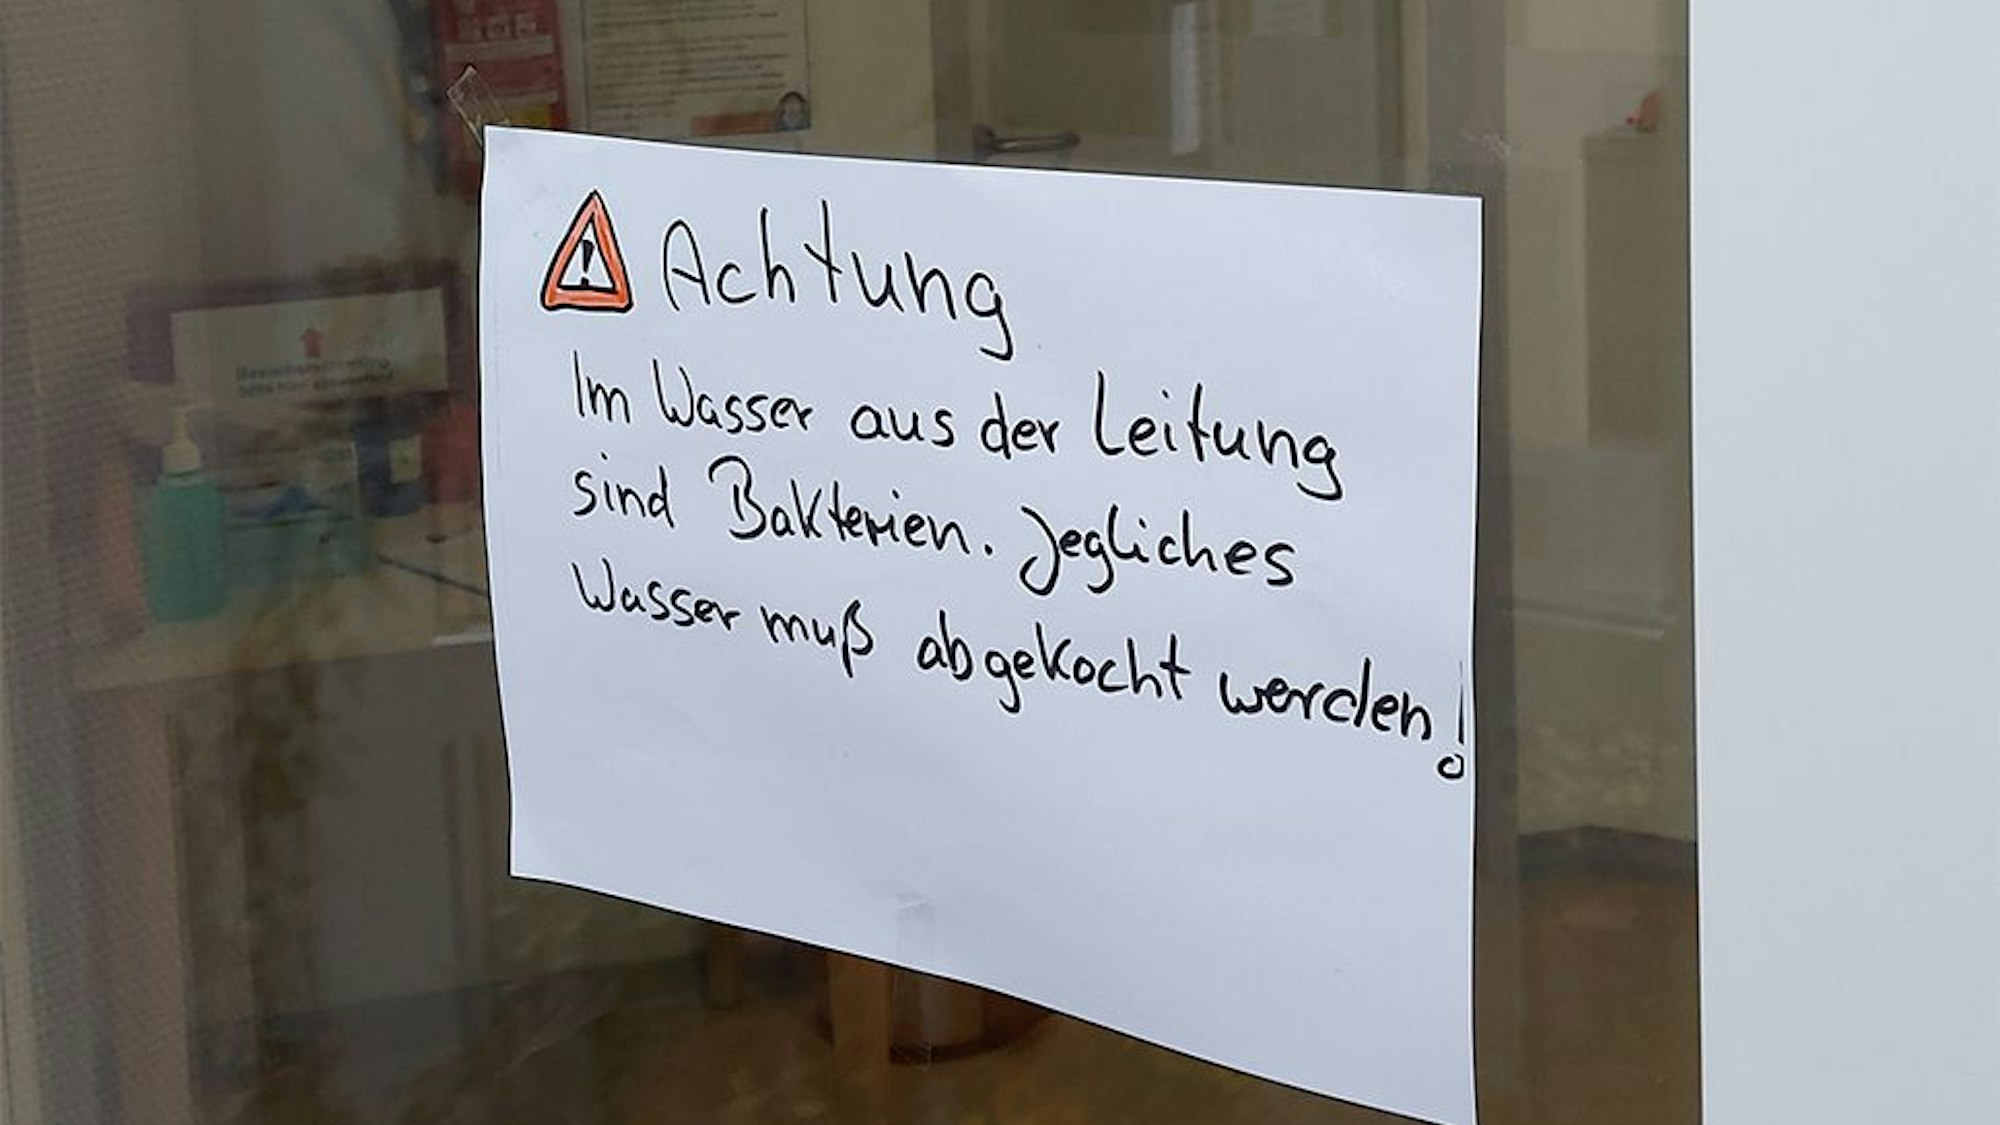 Handschriftlich werden Besucher vor dem verunreinigten Wasser in Dahlem und Schmidtheim gewarnt.